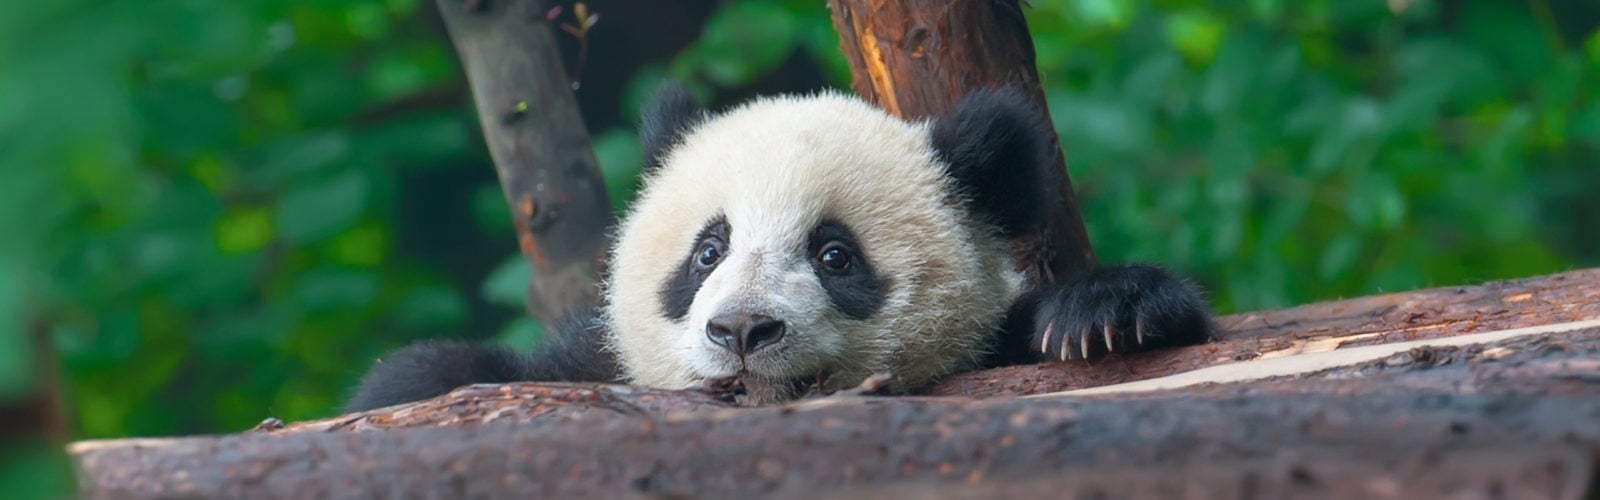 Young panda bear in Chengdu